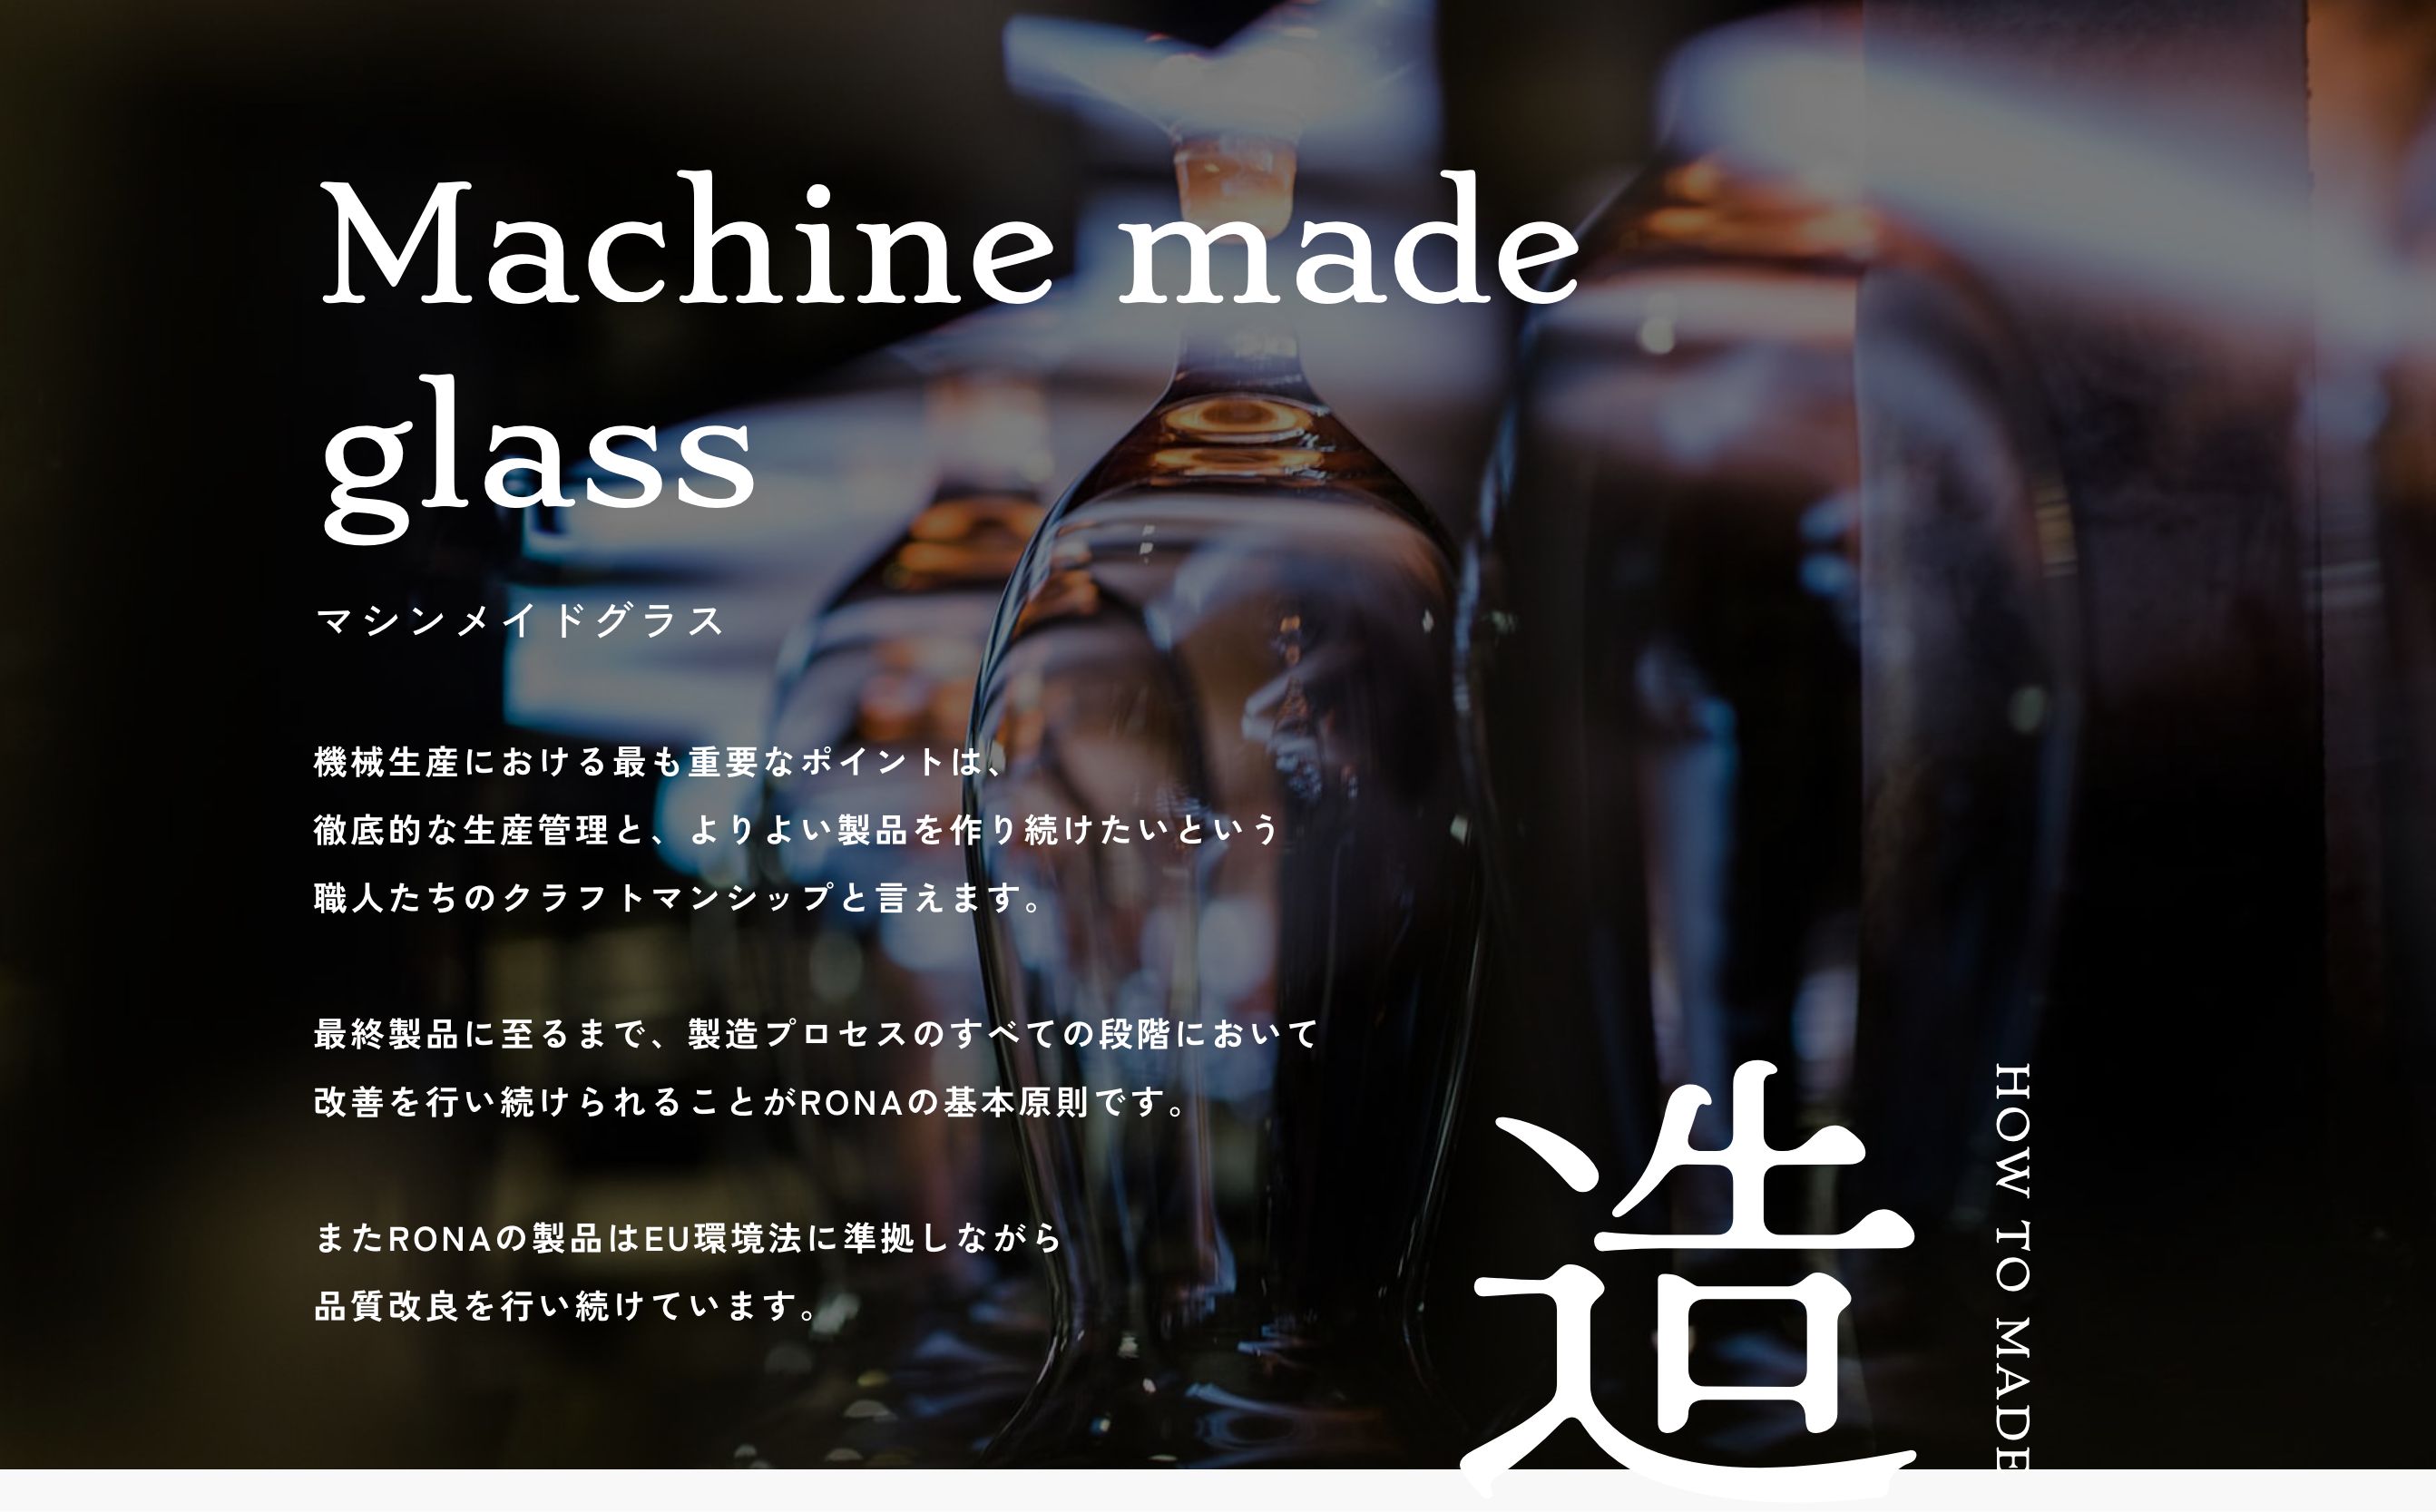 Machinemade glass